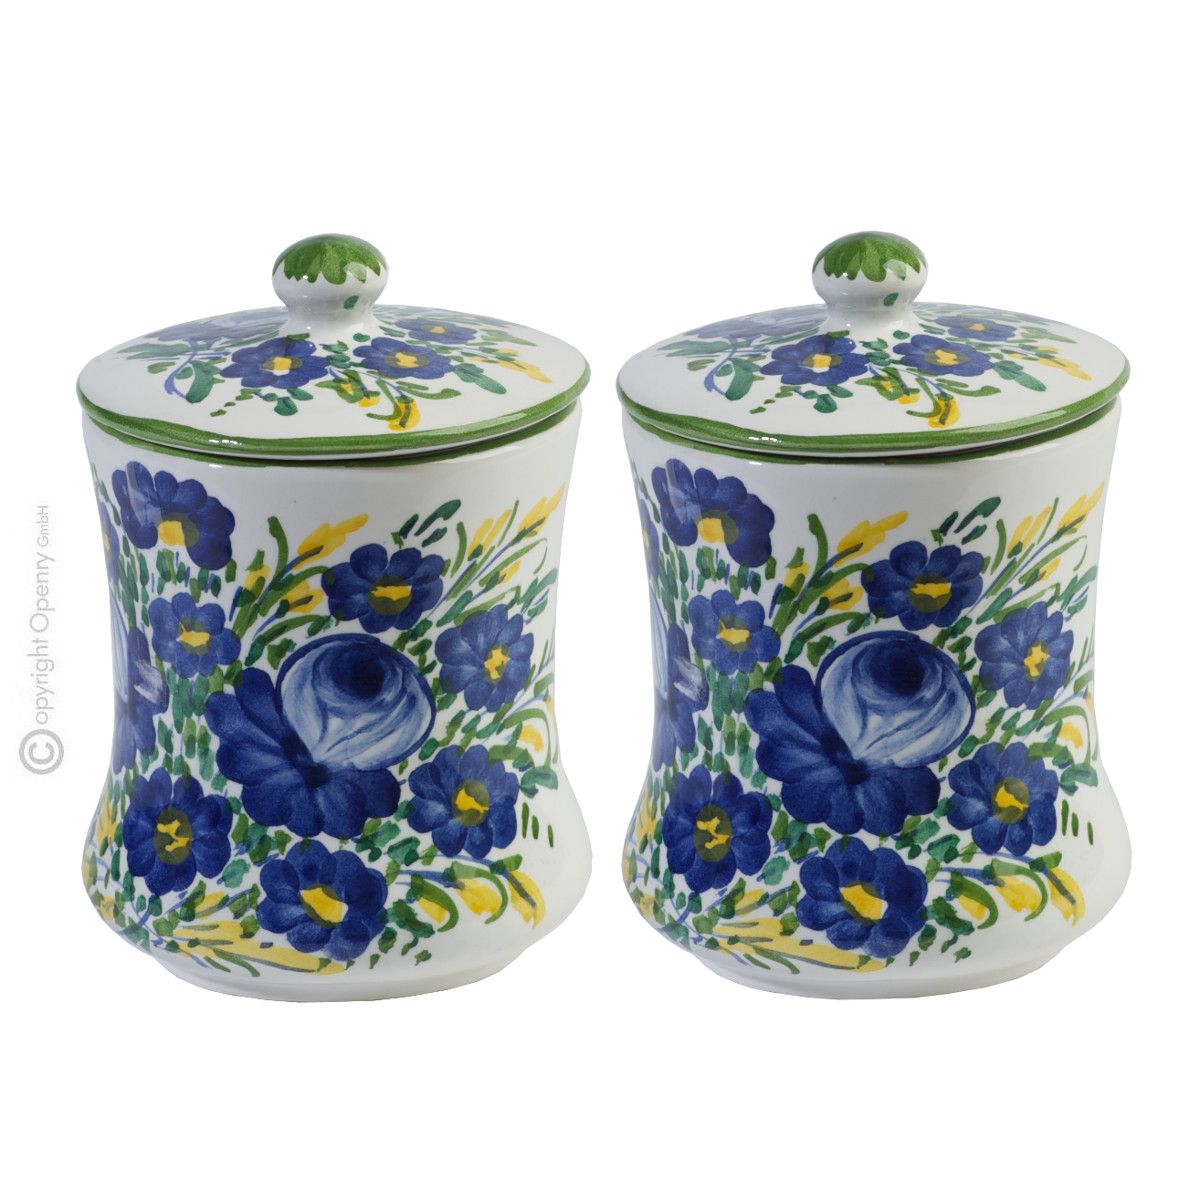 Boteghe - Real Made in Italy – Elegante barattoli in ceramica artigianale